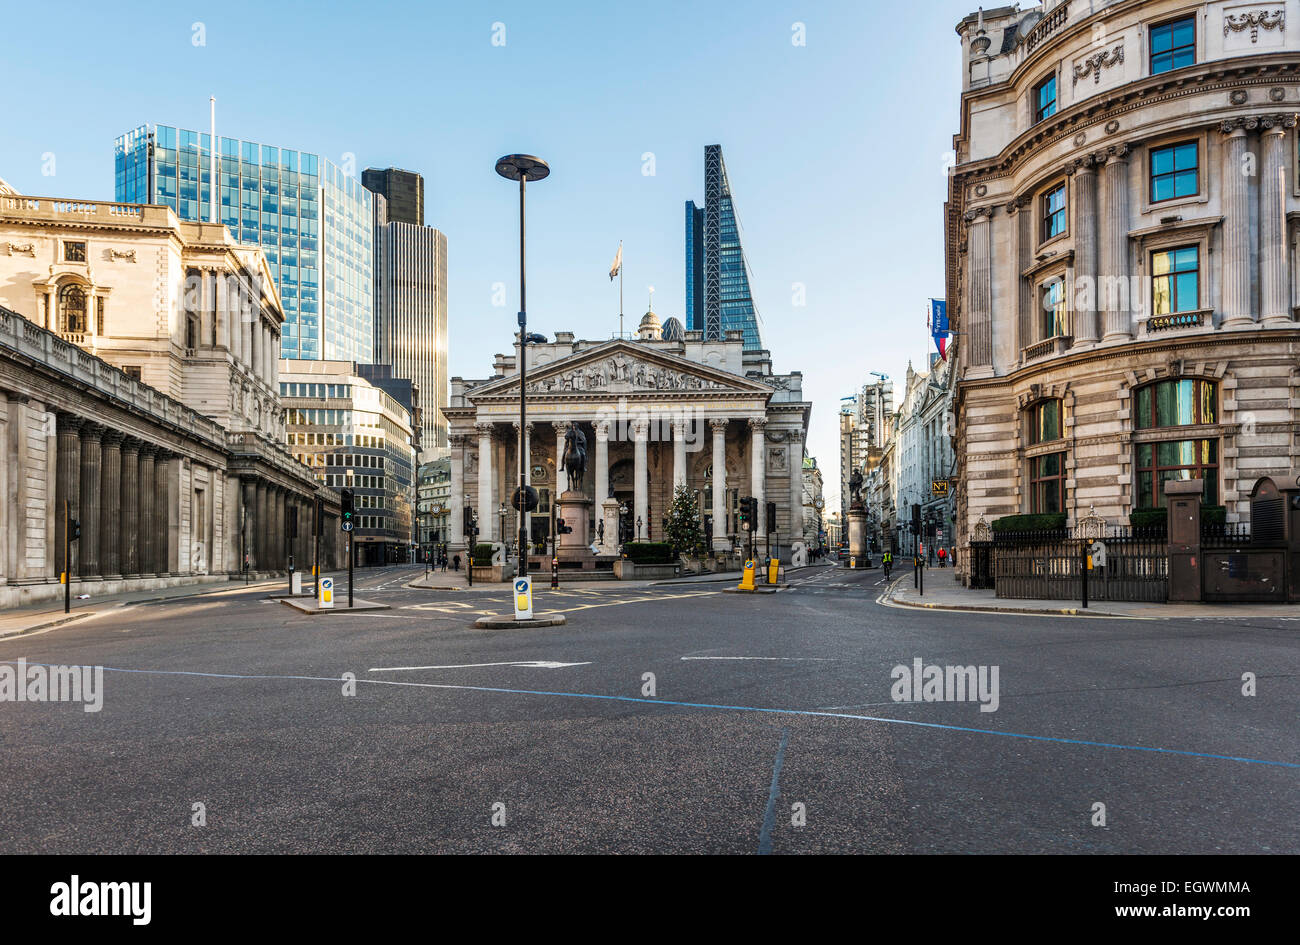 Bank Junction es un cruce de caminos en la ciudad de Londres, visto aquí inusualmente vacía Foto de stock